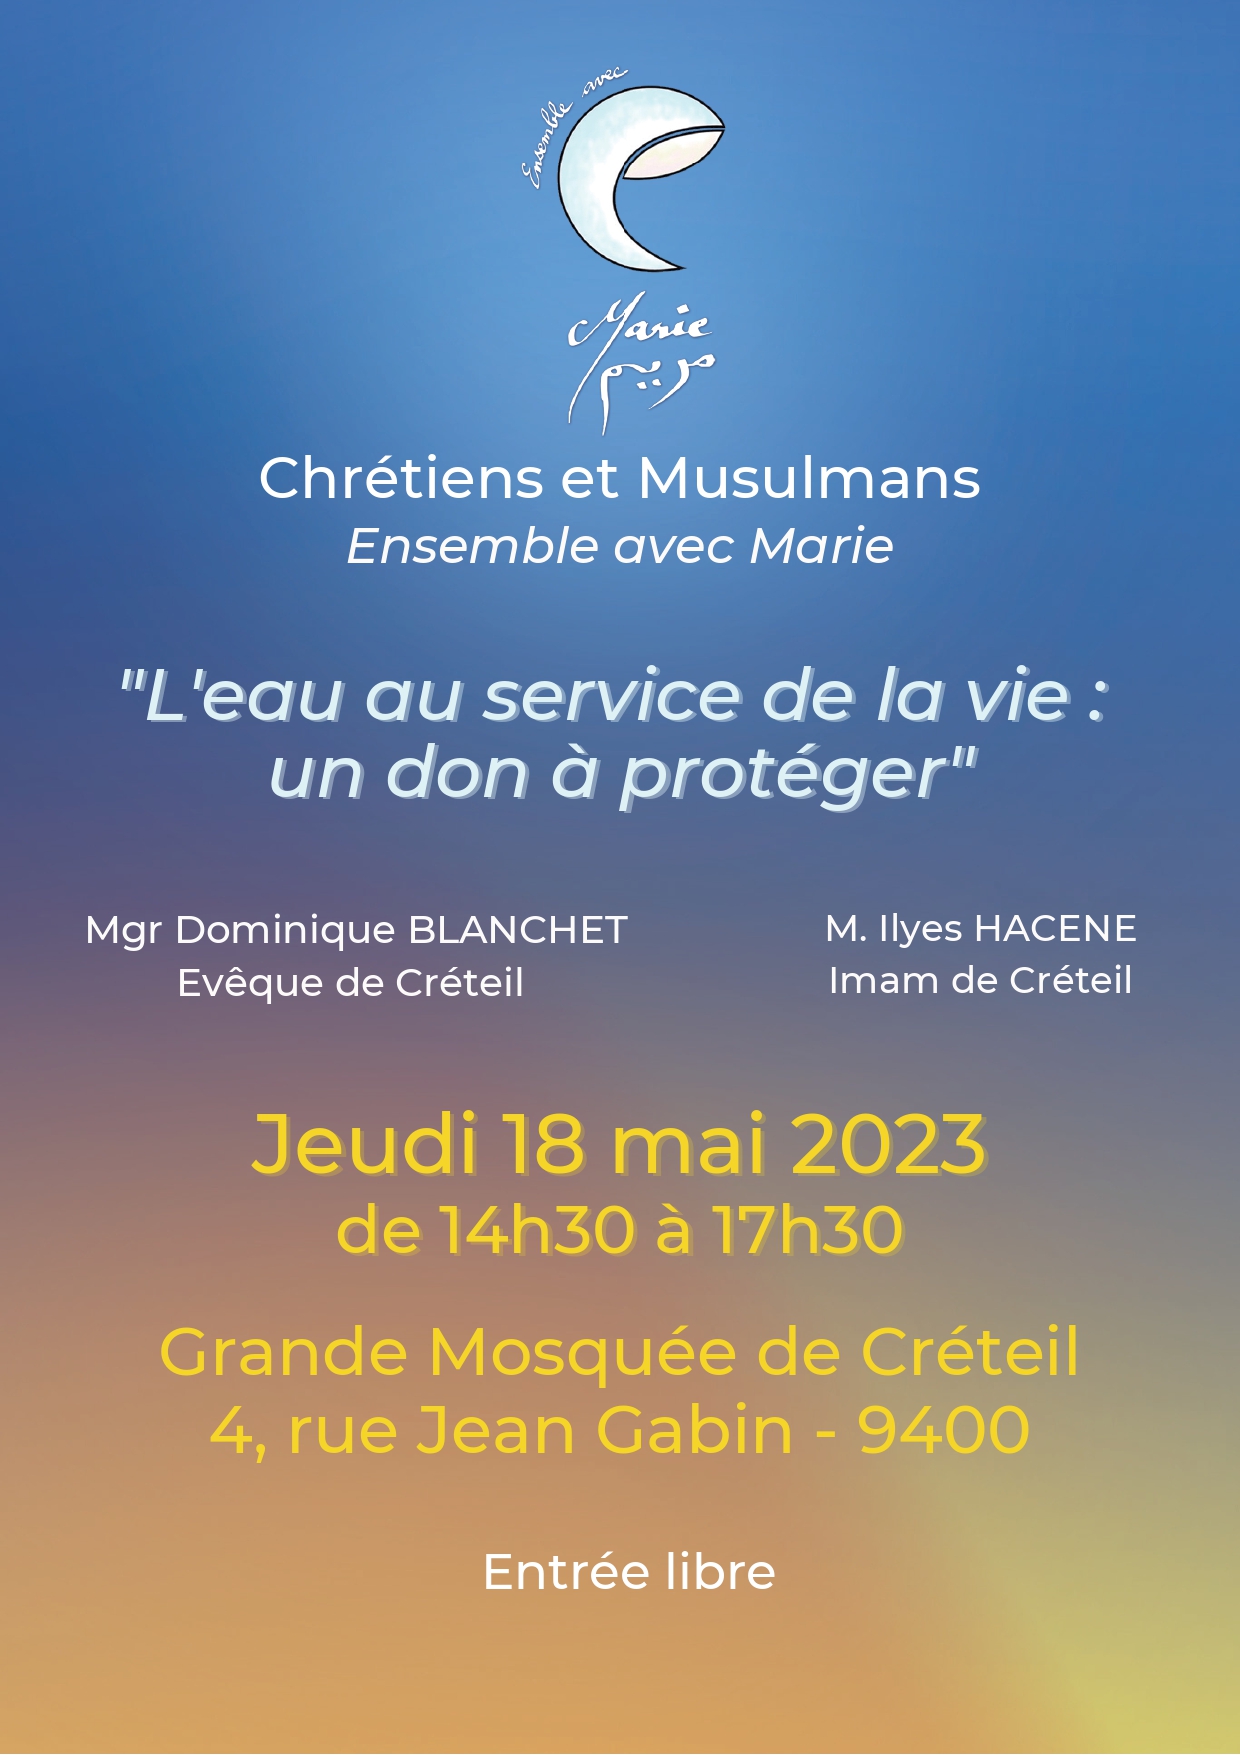 Ensemble avec Marie. Rencontre islamo-chrétienne à la grande mosquée de Créteil le 18 mai à 14h30